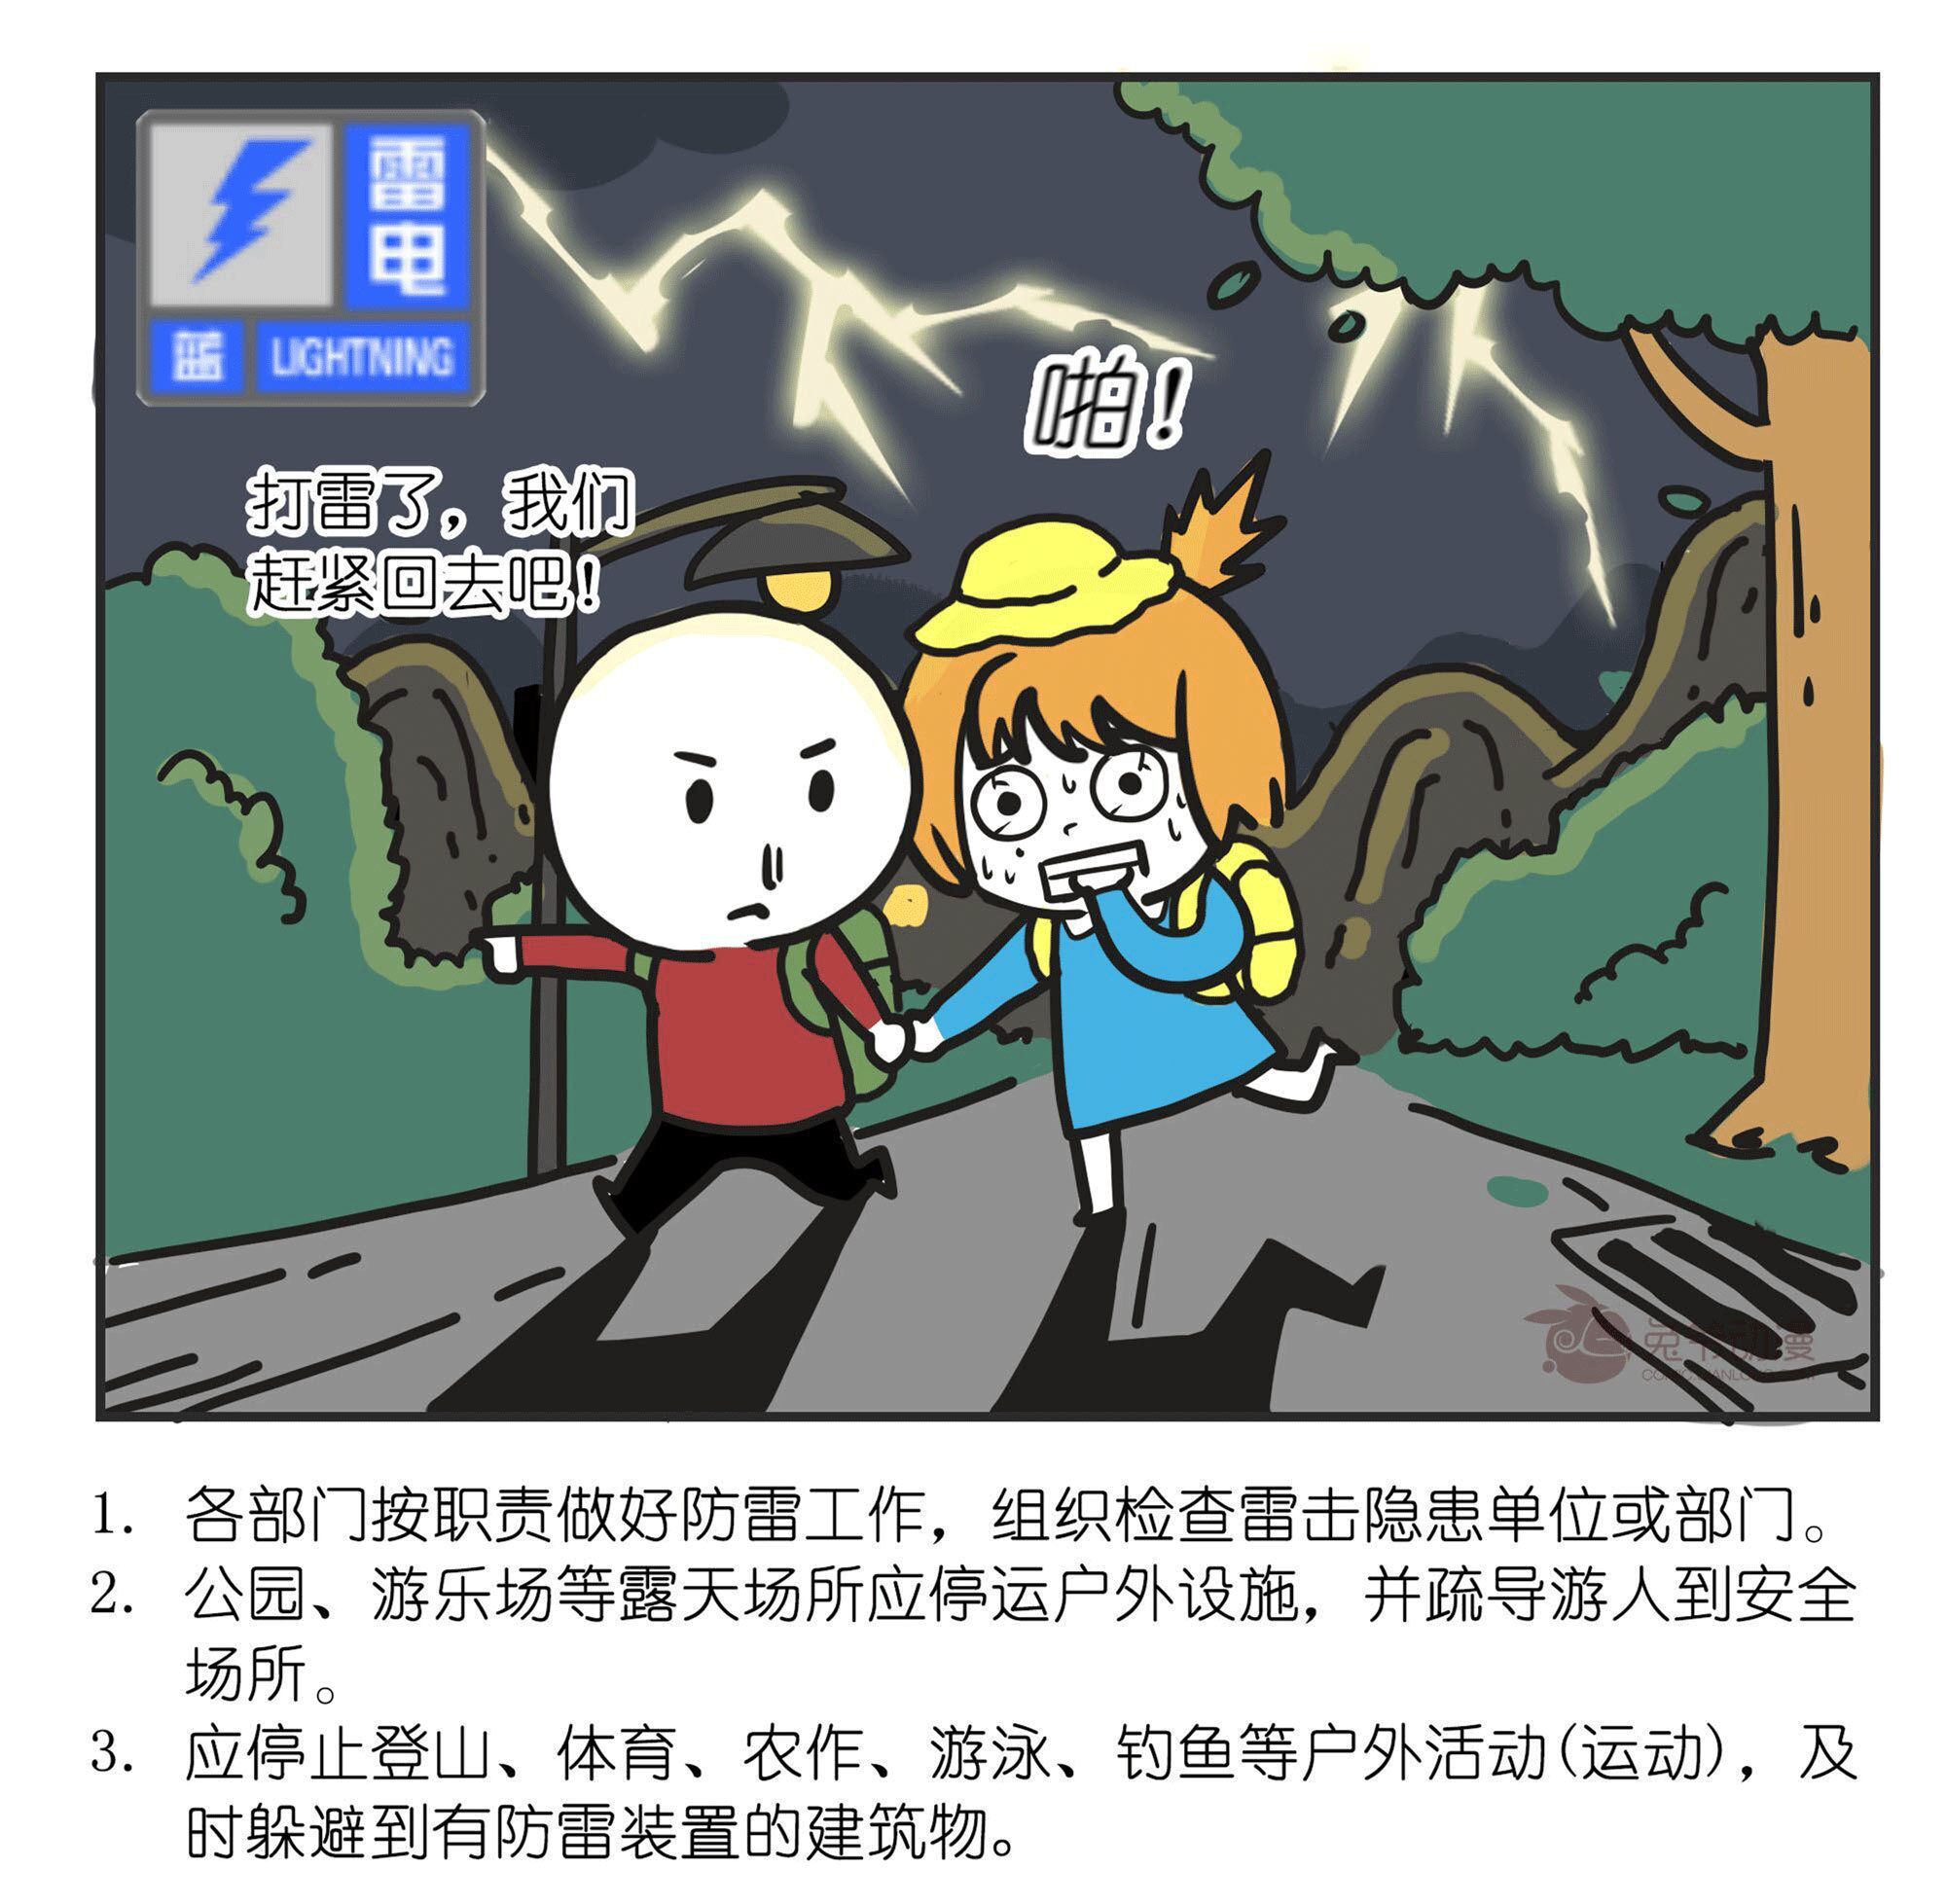 北京市2022年6月30日22时50分发布雷电蓝色预警信号